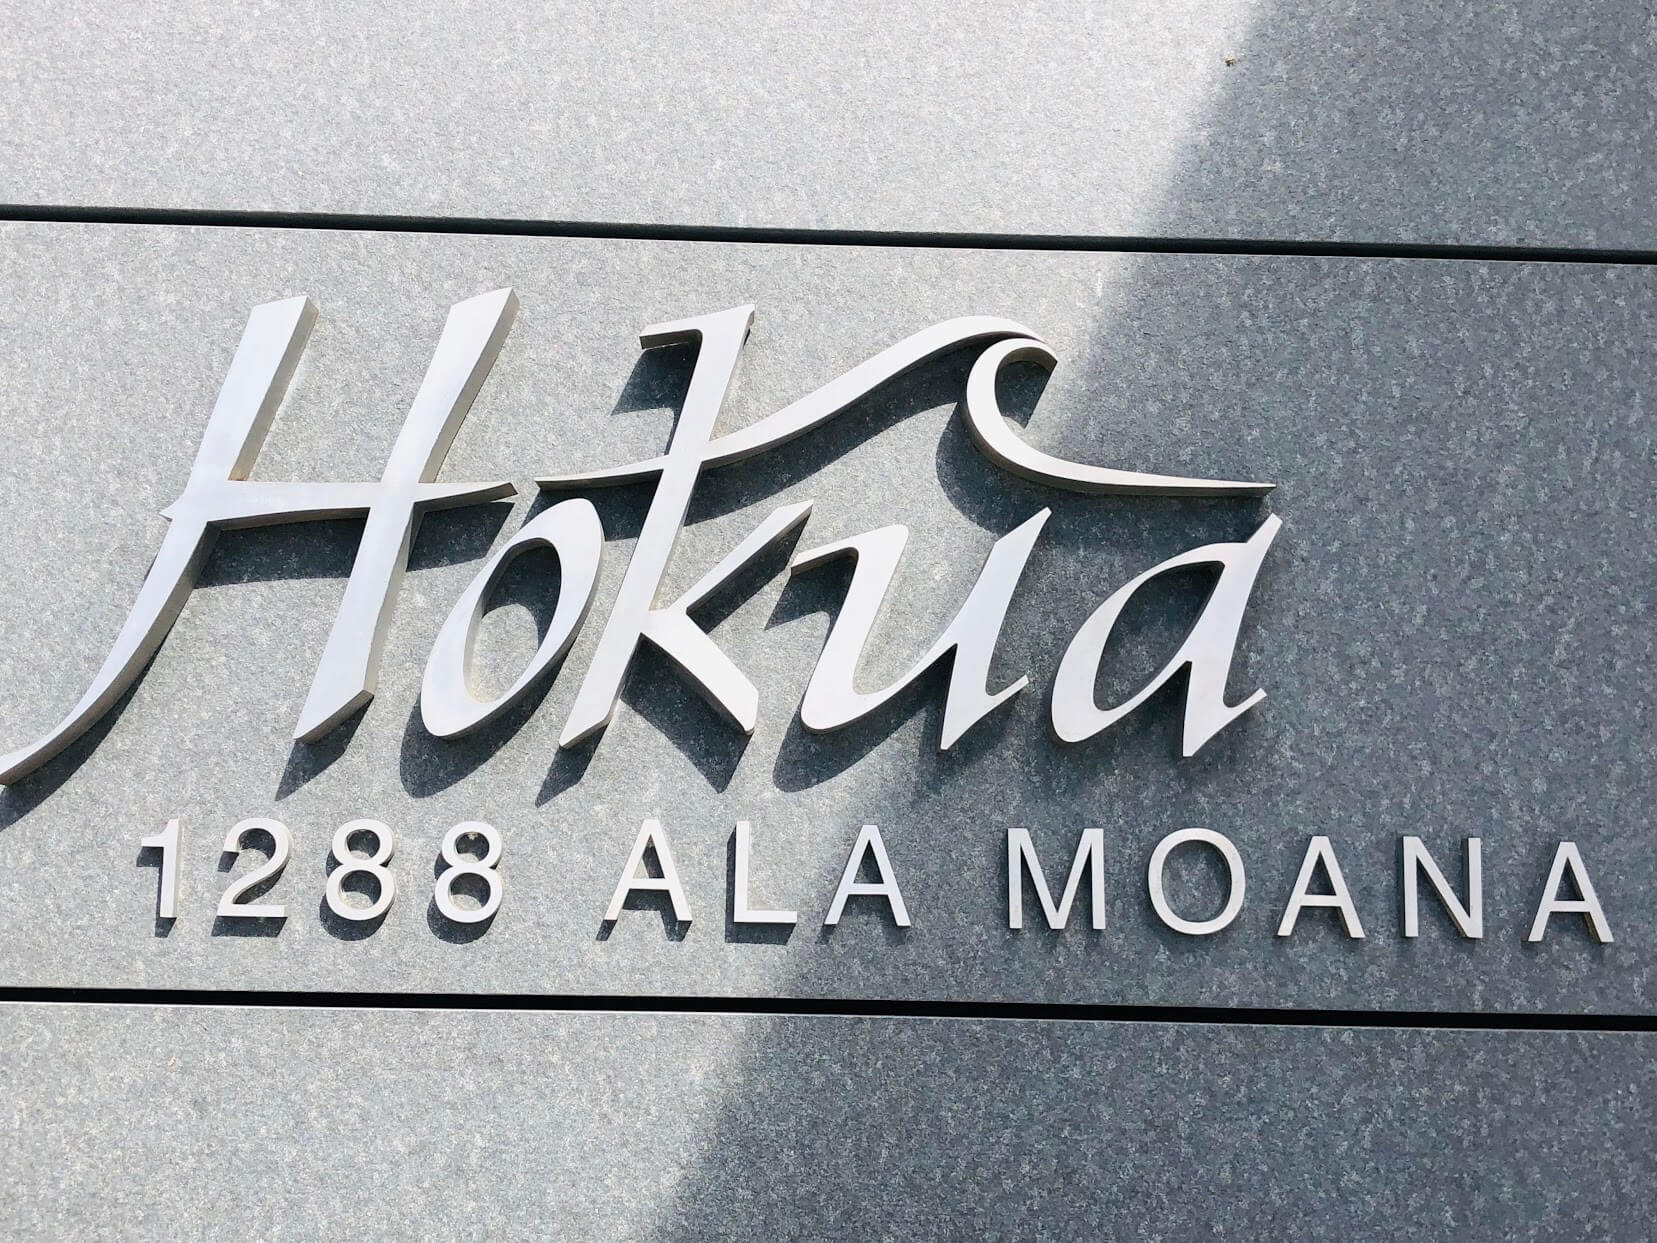 Hokuaの看板